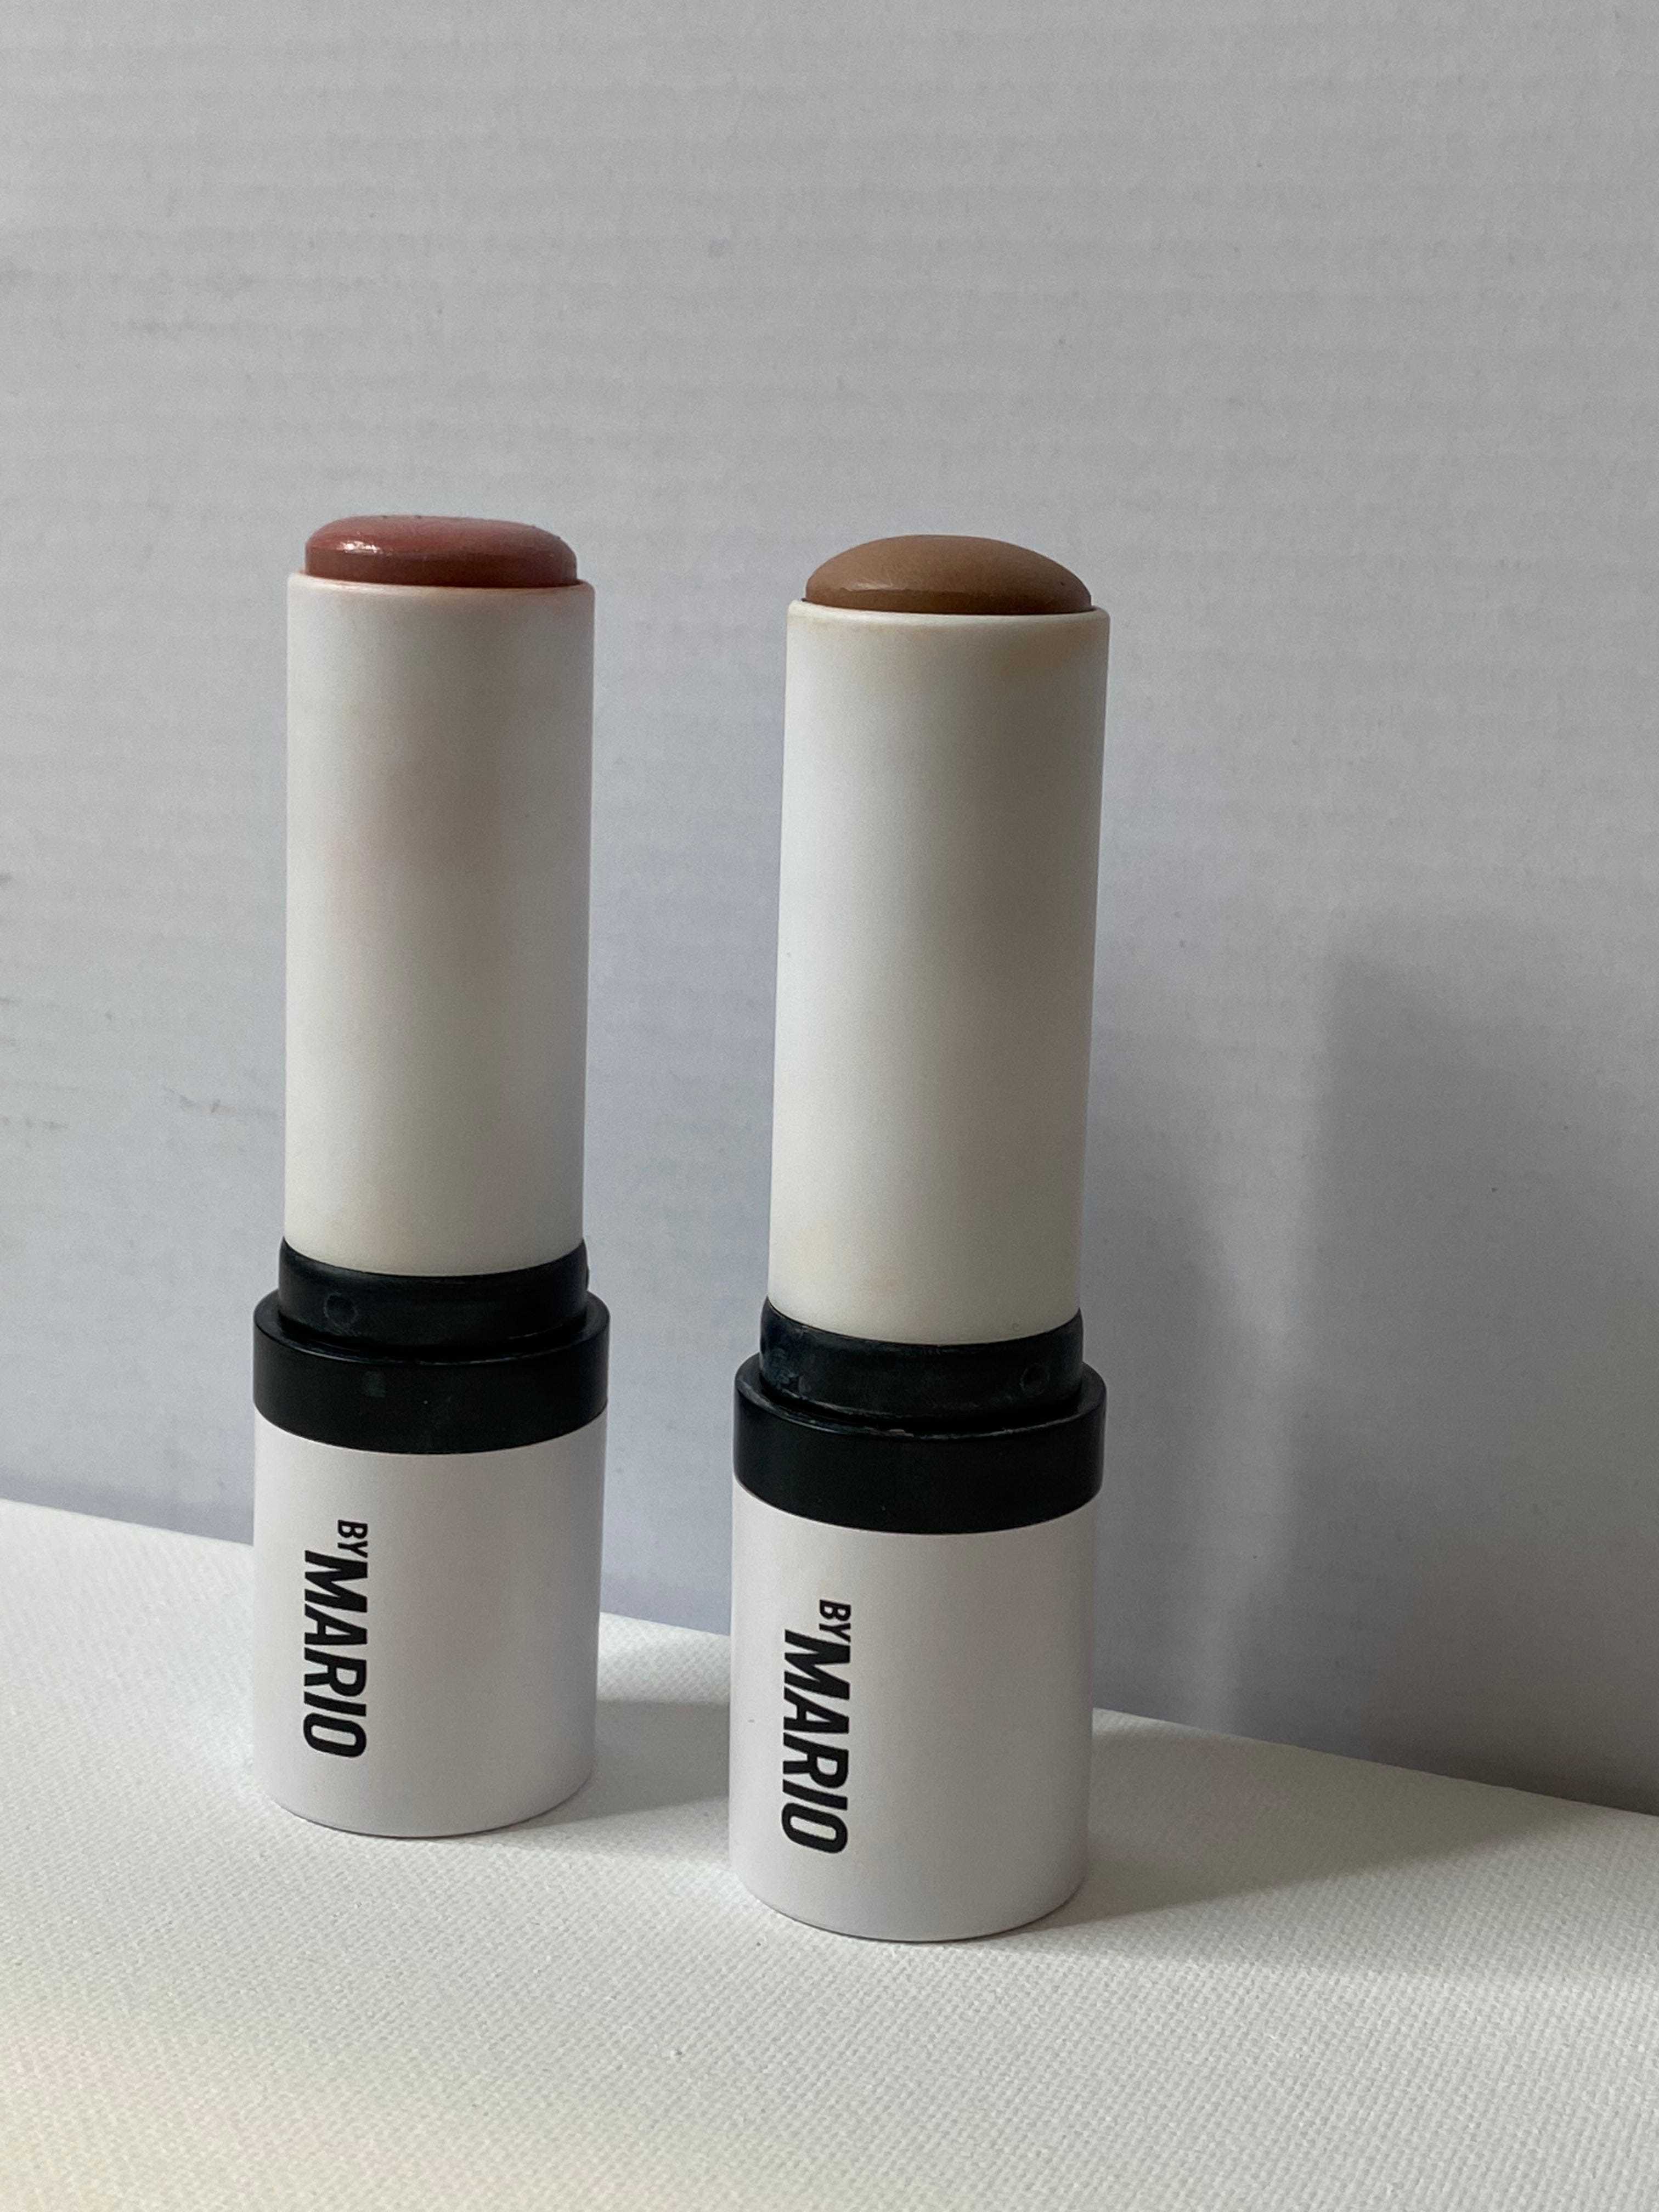 Zwei cremefarbene Make-up-Sticks mit dem Schriftzug „by MARIO“ auf der Seite.  Das Produkt auf der linken Seite ist rosa und das Produkt auf der rechten Seite ist braun.